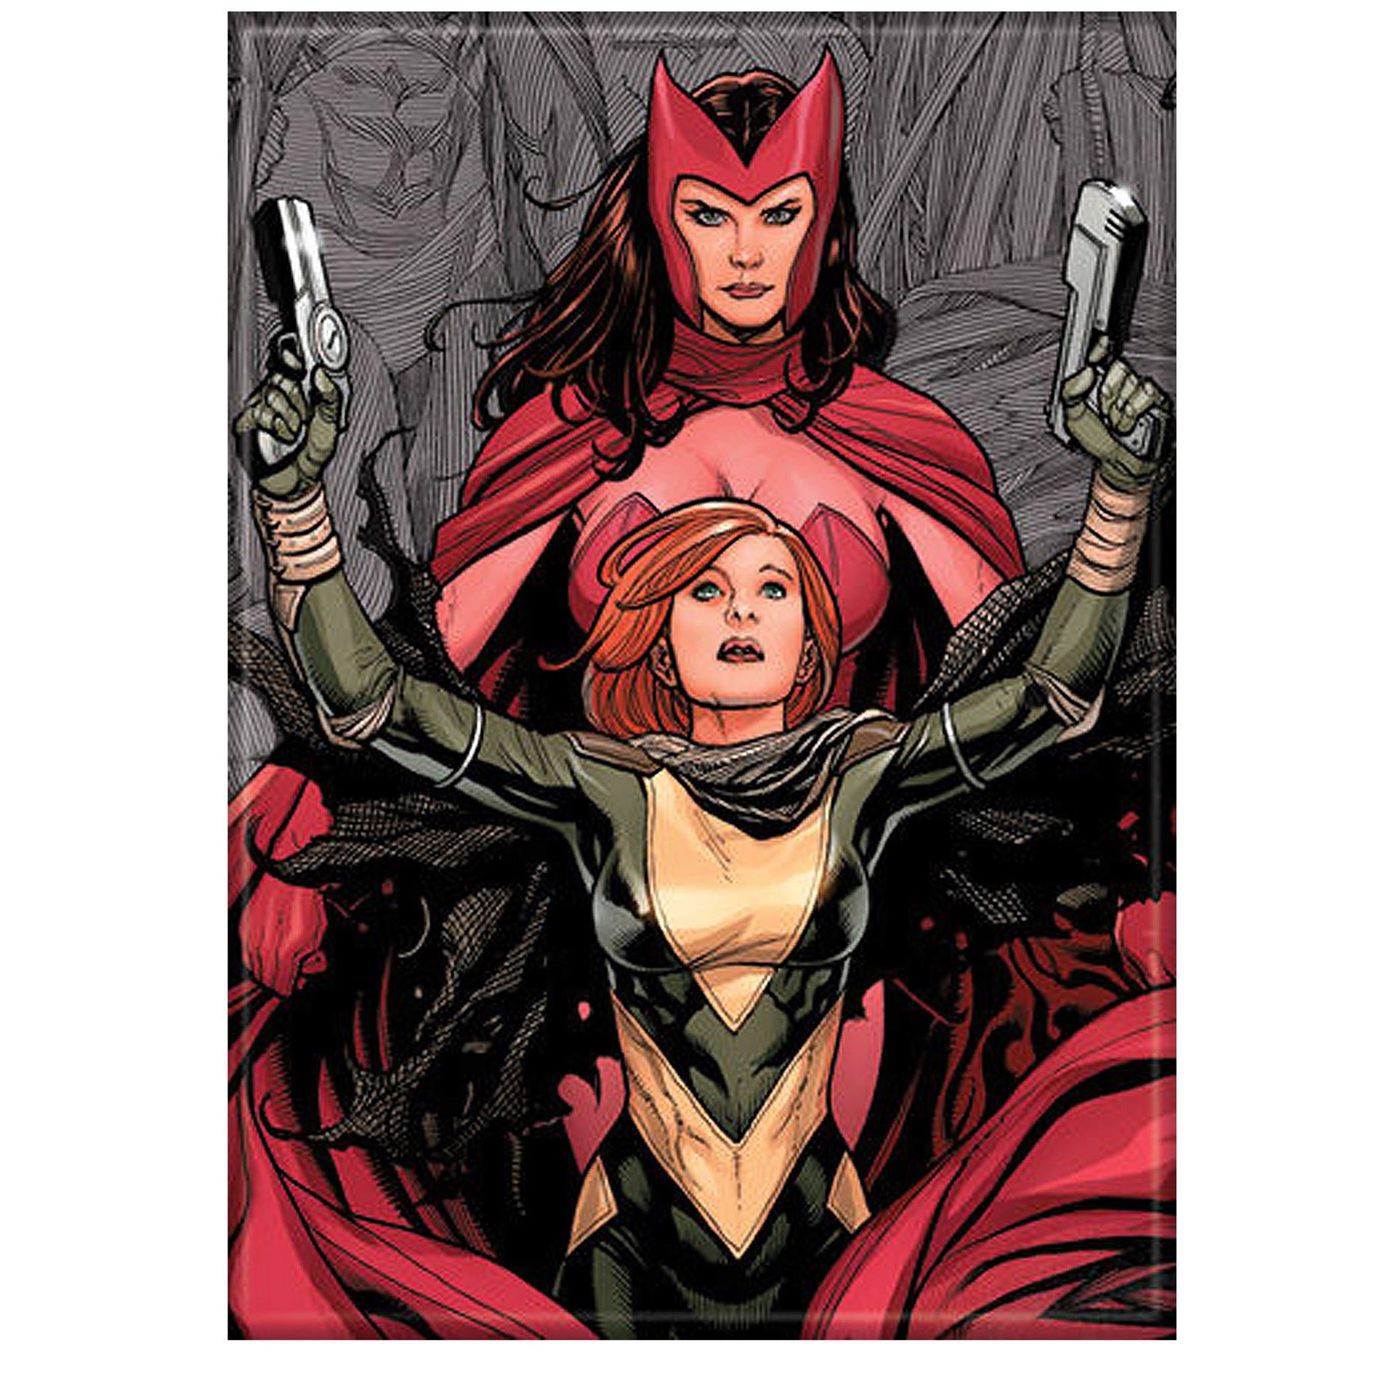 AVX #0 Hope & Scarlet Witch Magnet